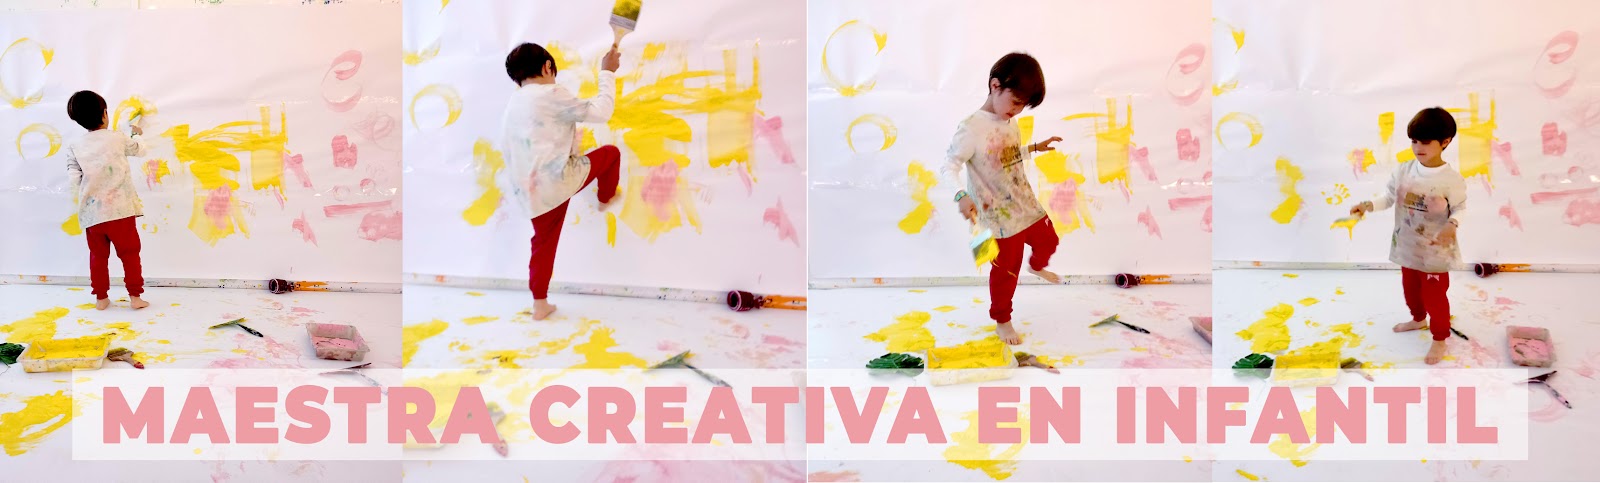 Maestra creativa en Infantil